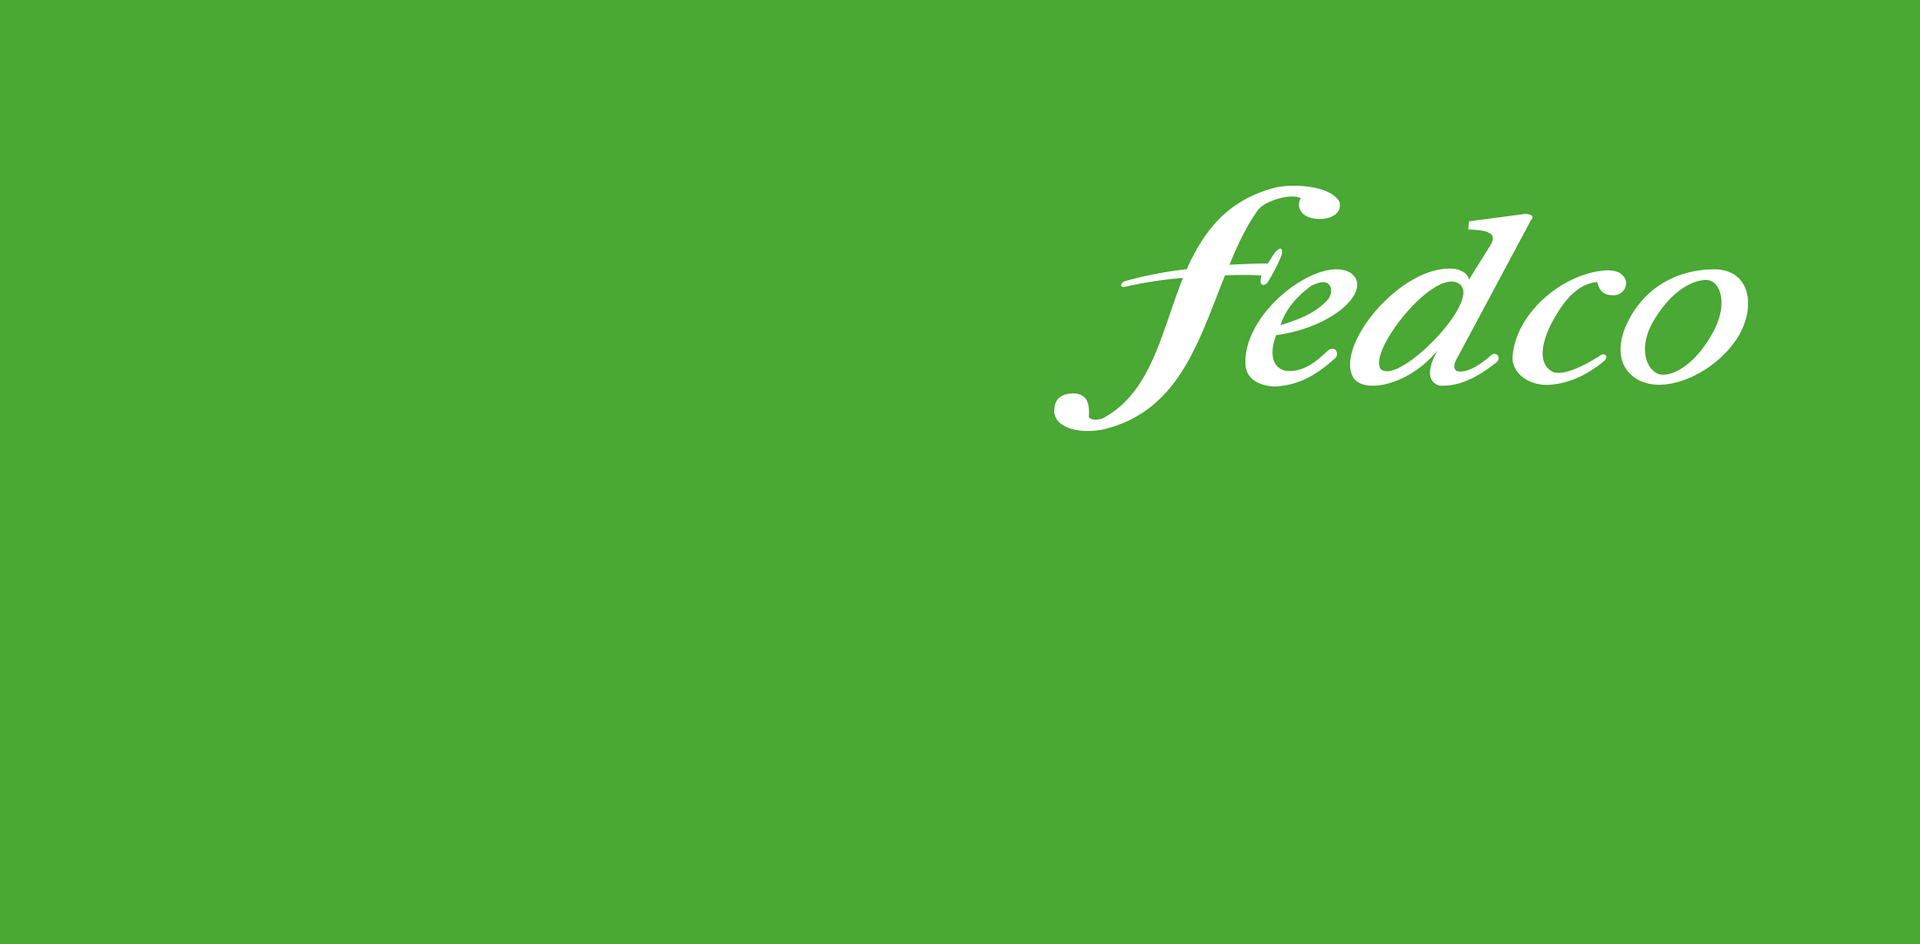 Logo de Fedco en un fondo verde